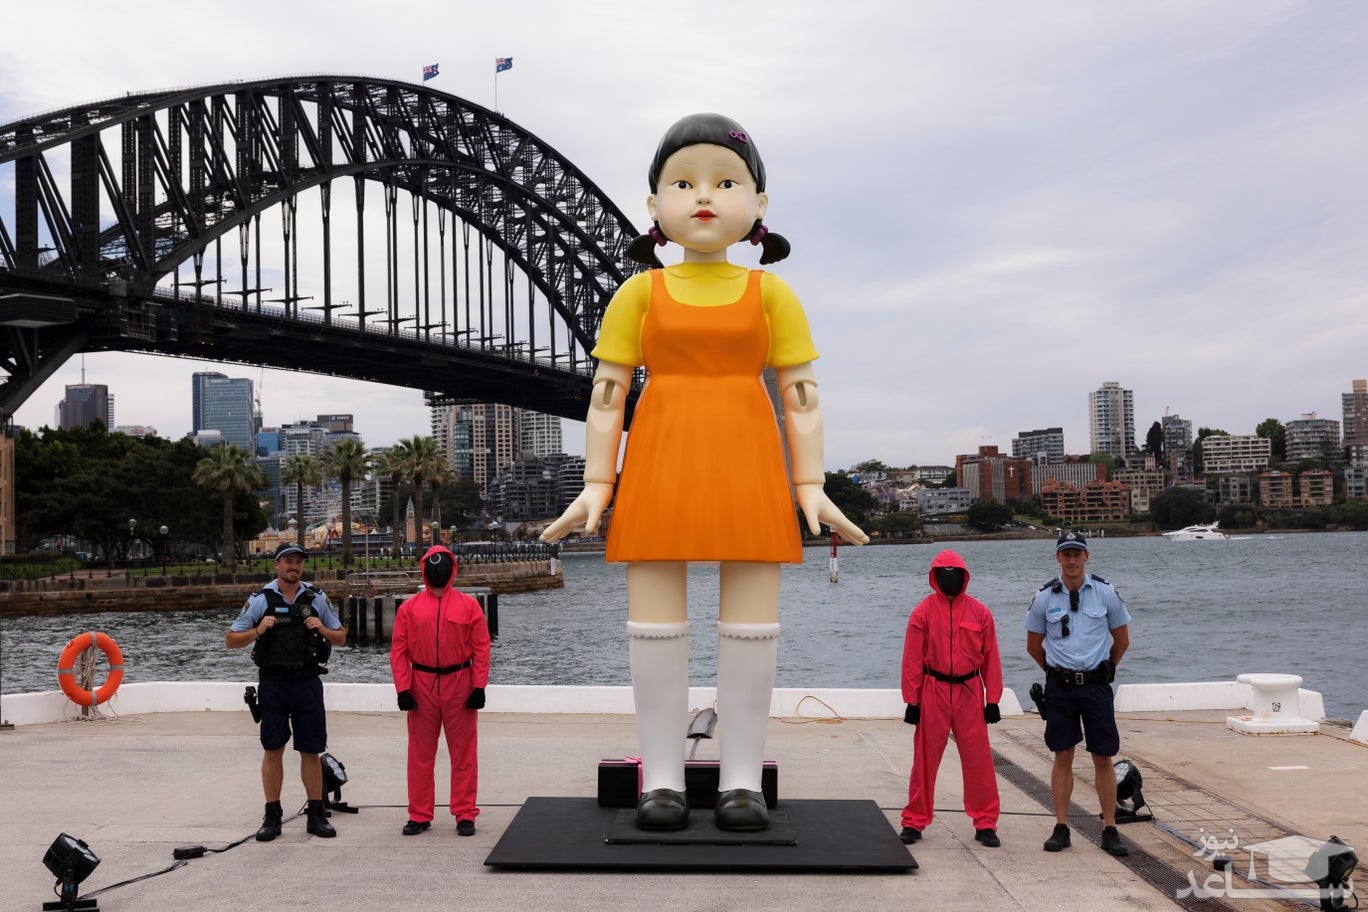 نصب عروسک بزرگ نماد سریال کره ای "بازی مرکب" در شهر سیدنی استرالیا/ گتی ایمجز